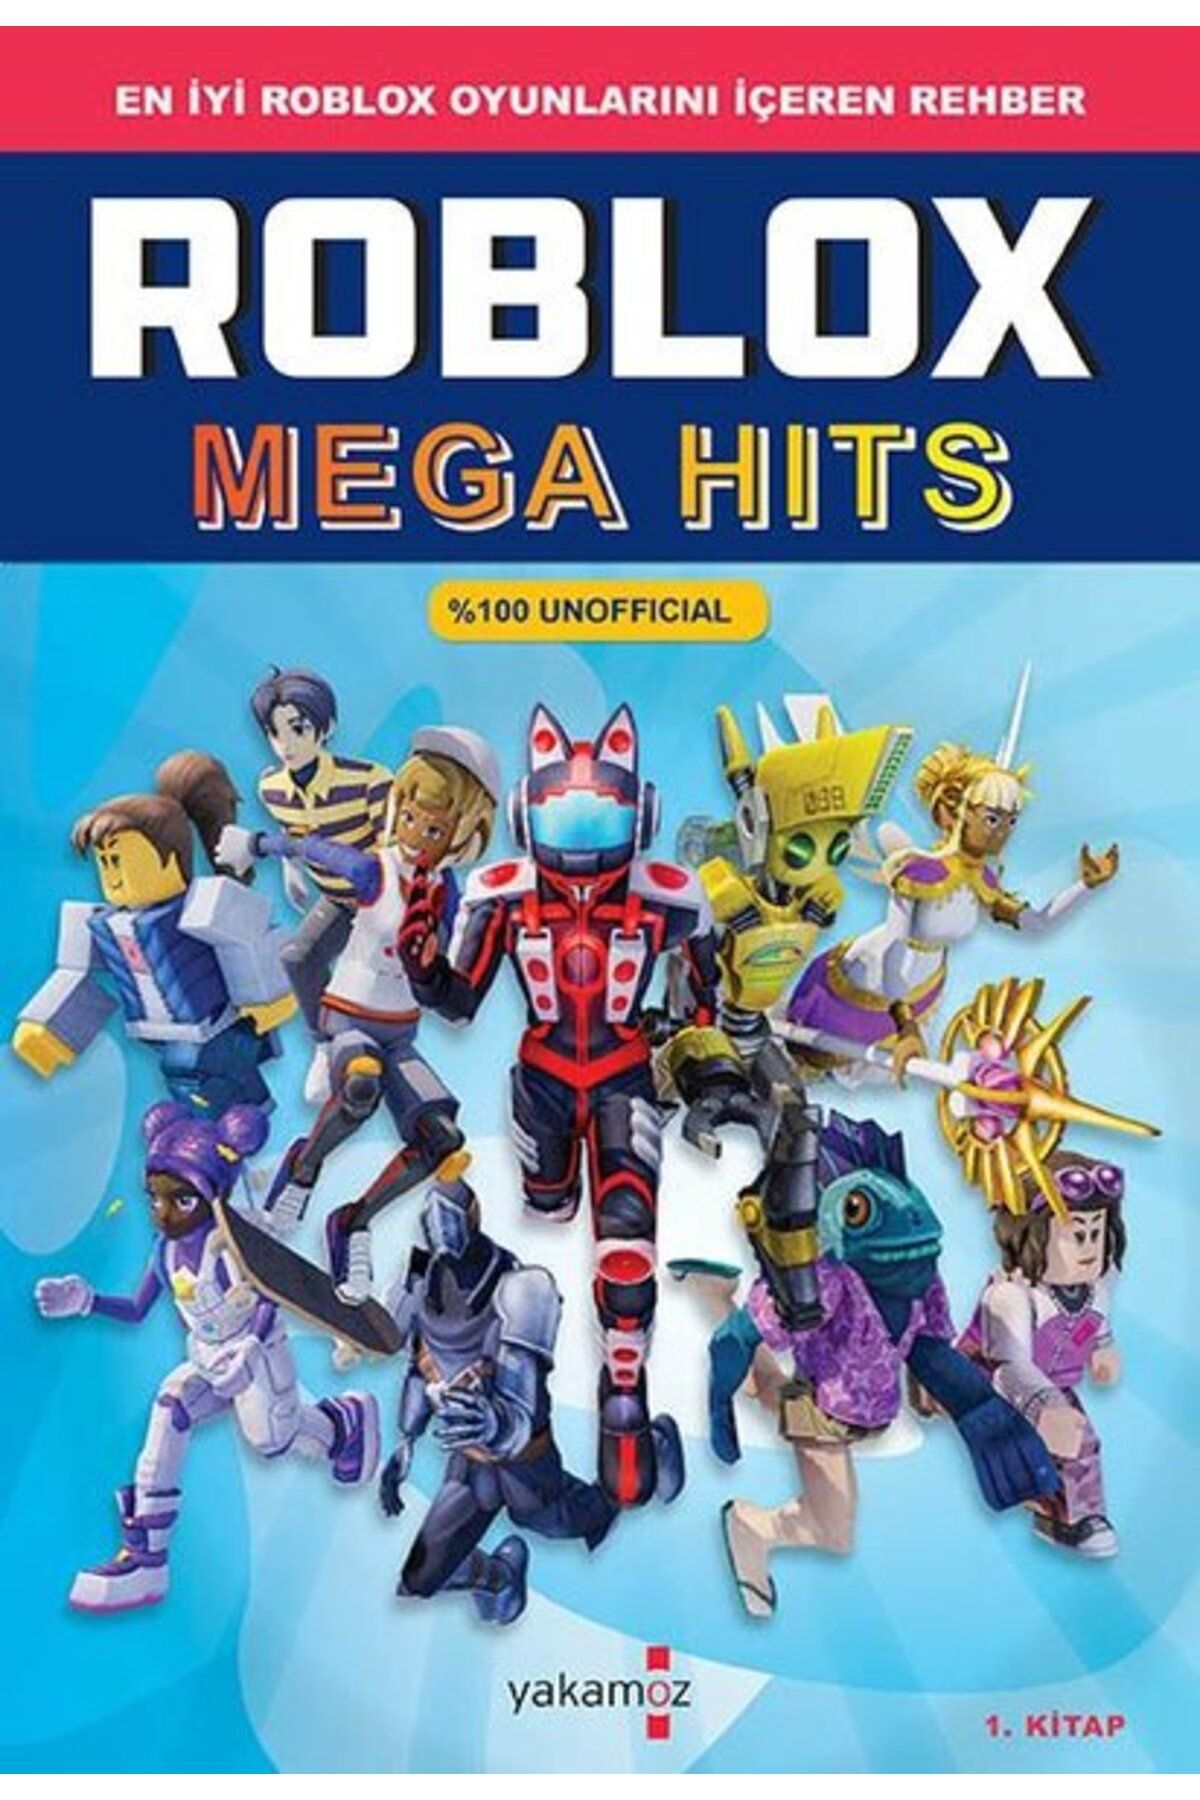 Yakamoz Yayınları Roblox Mega Hits 1.Kitap - En İyi Roblox Oyunlarını İçeren Rehber